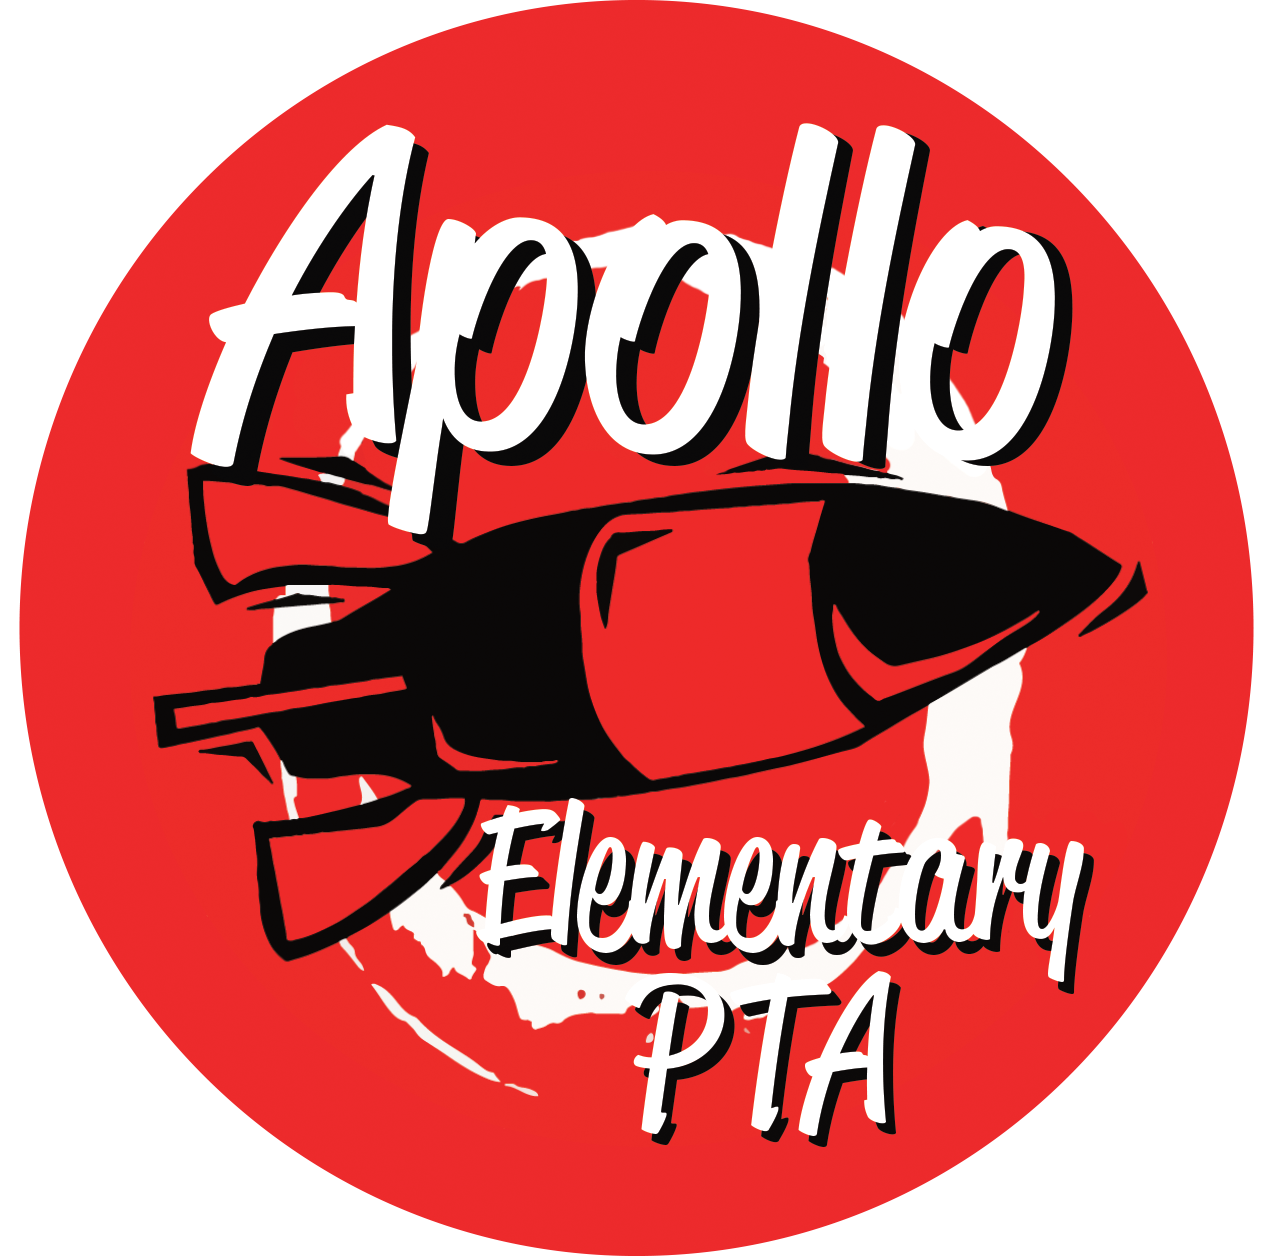 Apollo Elementary PTA1270 x 1256